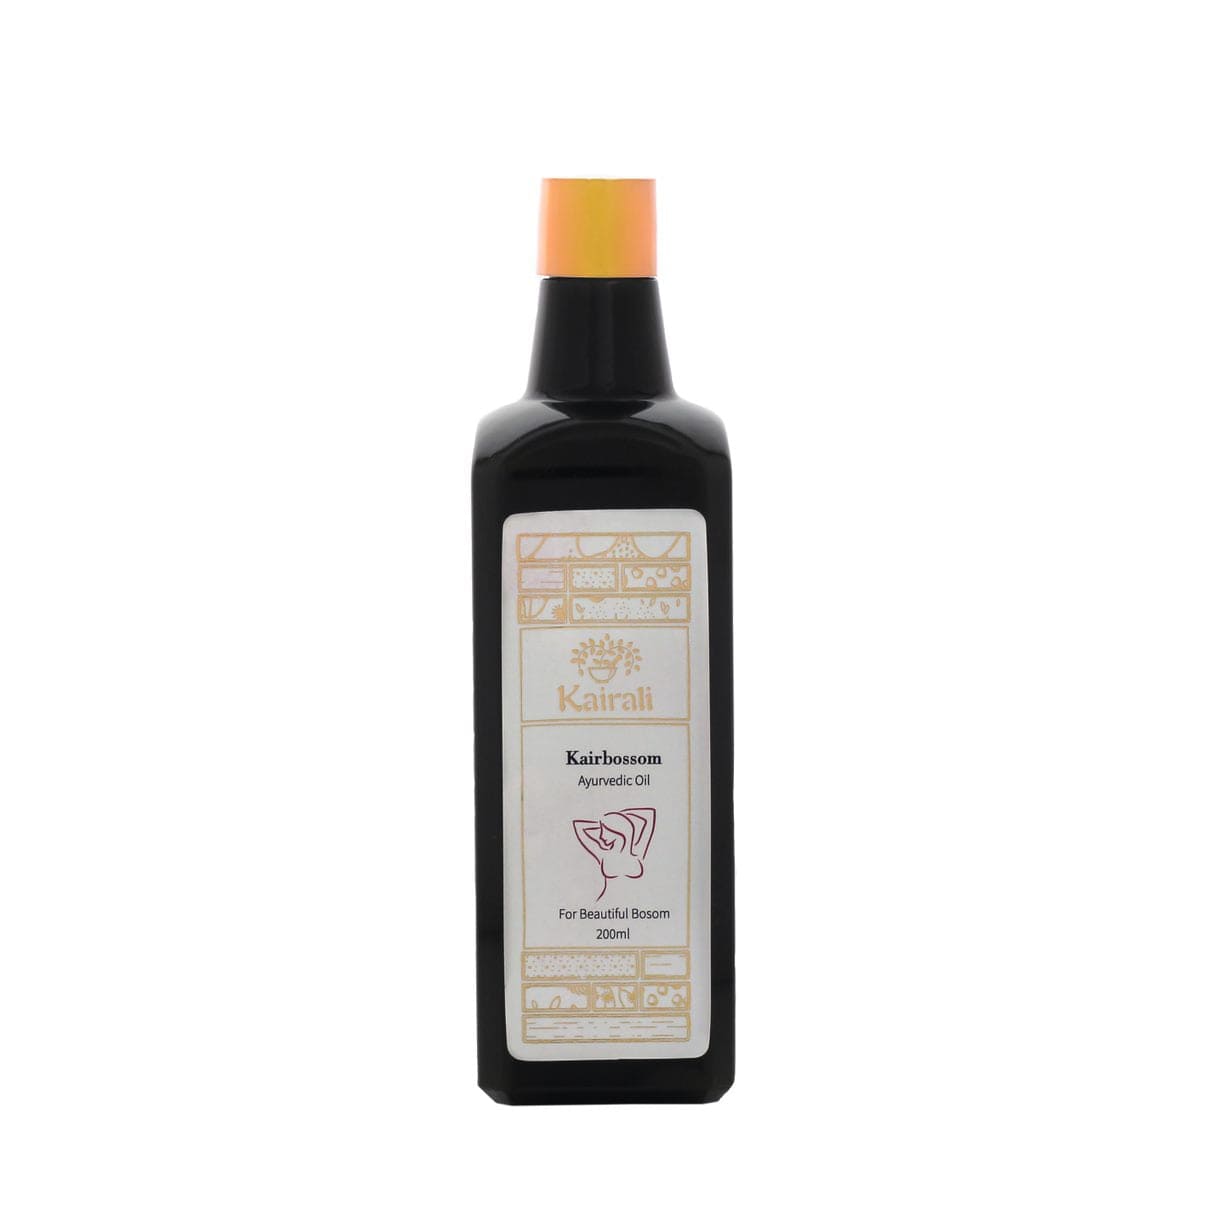 Kairali Ayurveda Group Kairali Kairbossom - Ayurvedic Breast Enhancement Massage Oil for Beautiful Bosom (200 ml)